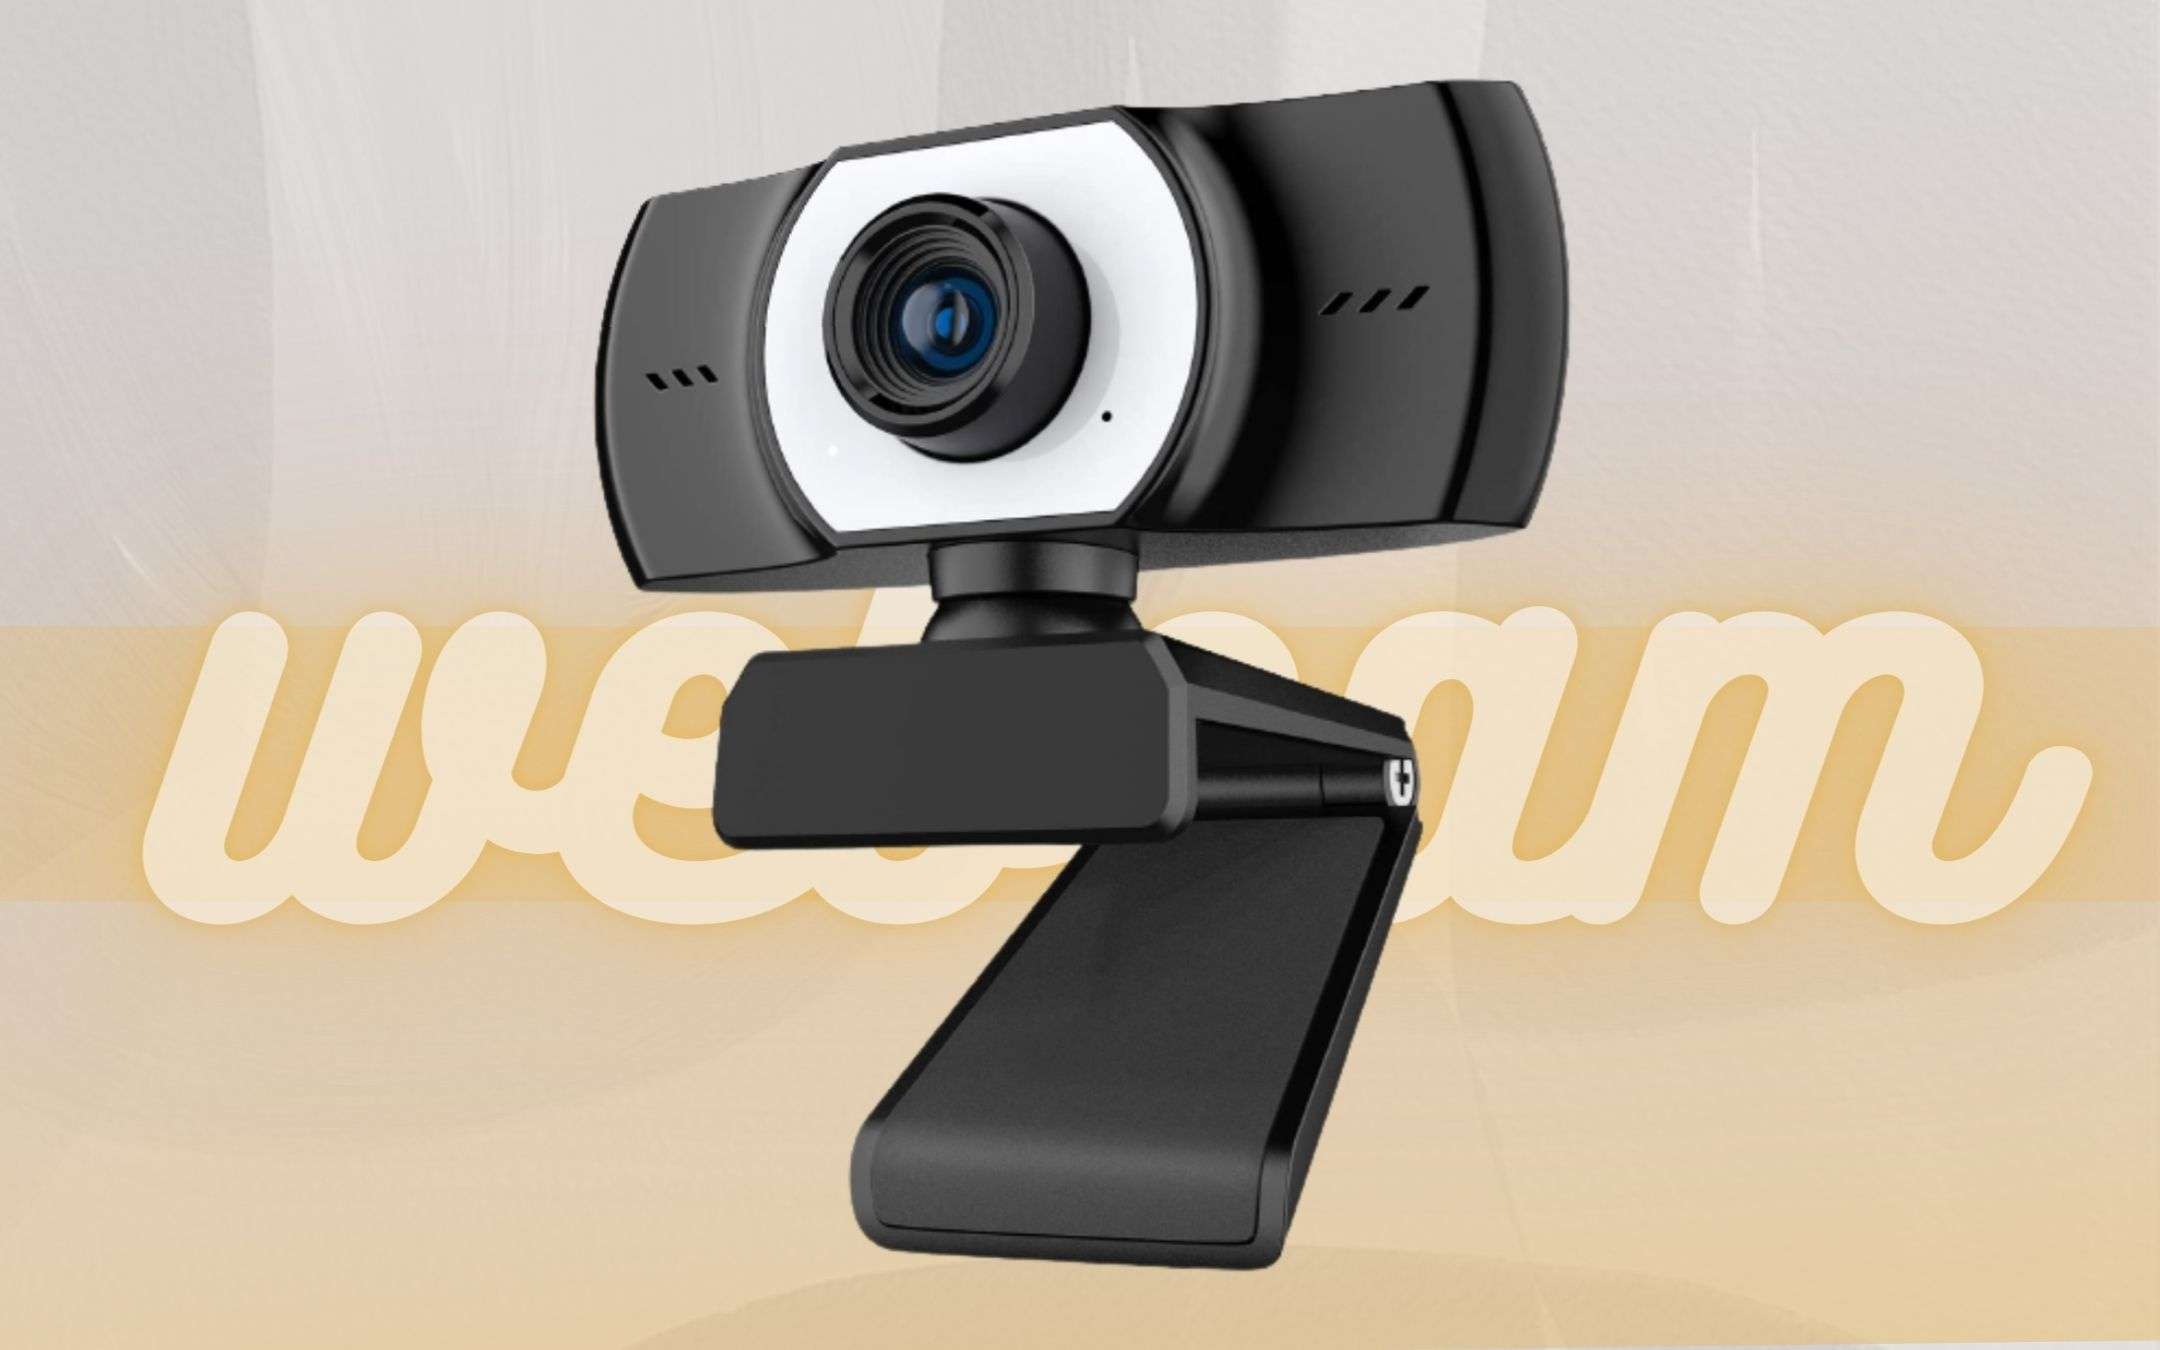 Webcam per computer a prezzo FOLLE: meno di 10€ per questa BOMBA